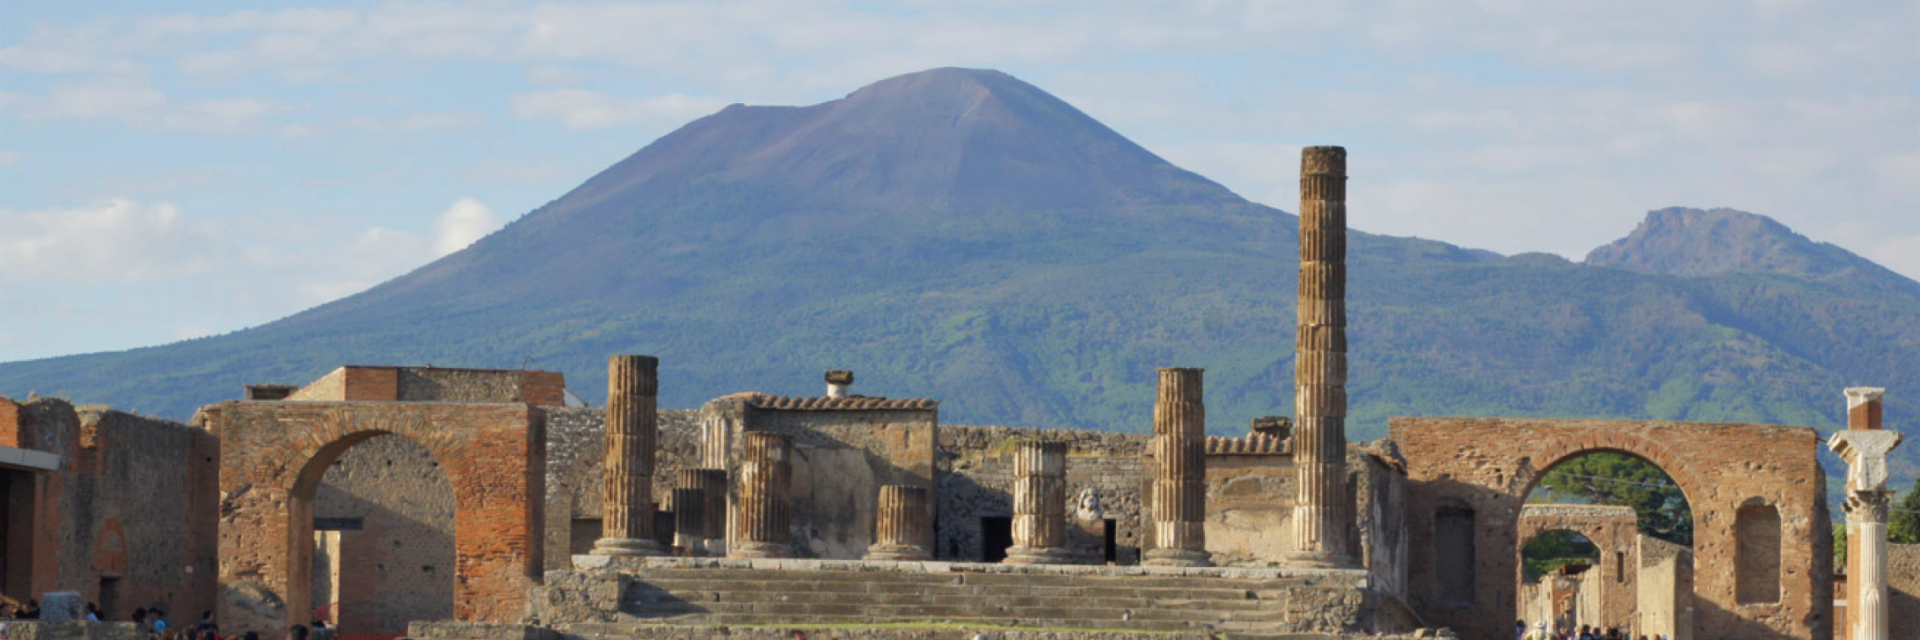 Pompei e vesuvio